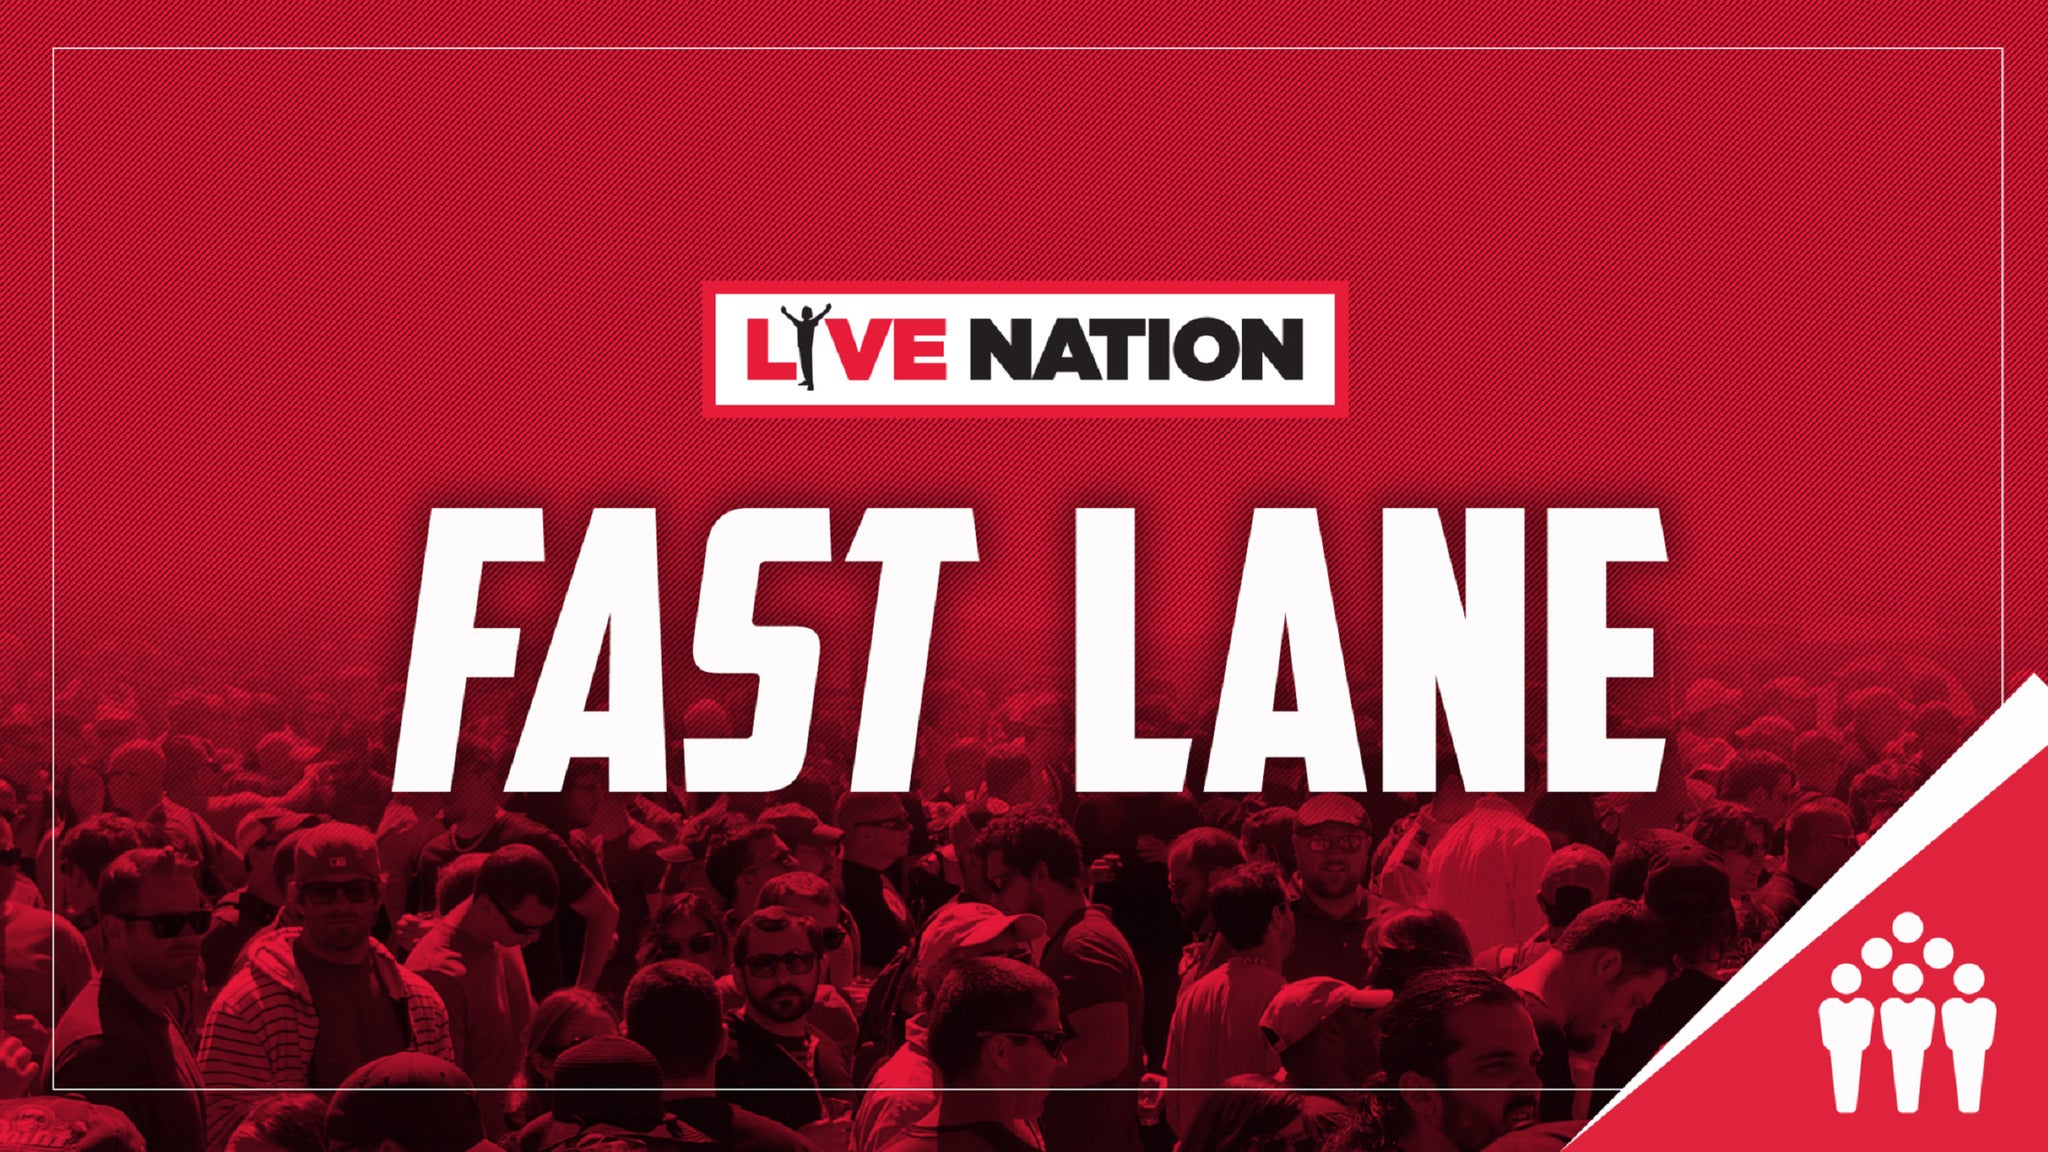 Live Nation Fast Lane presale information on freepresalepasswords.com